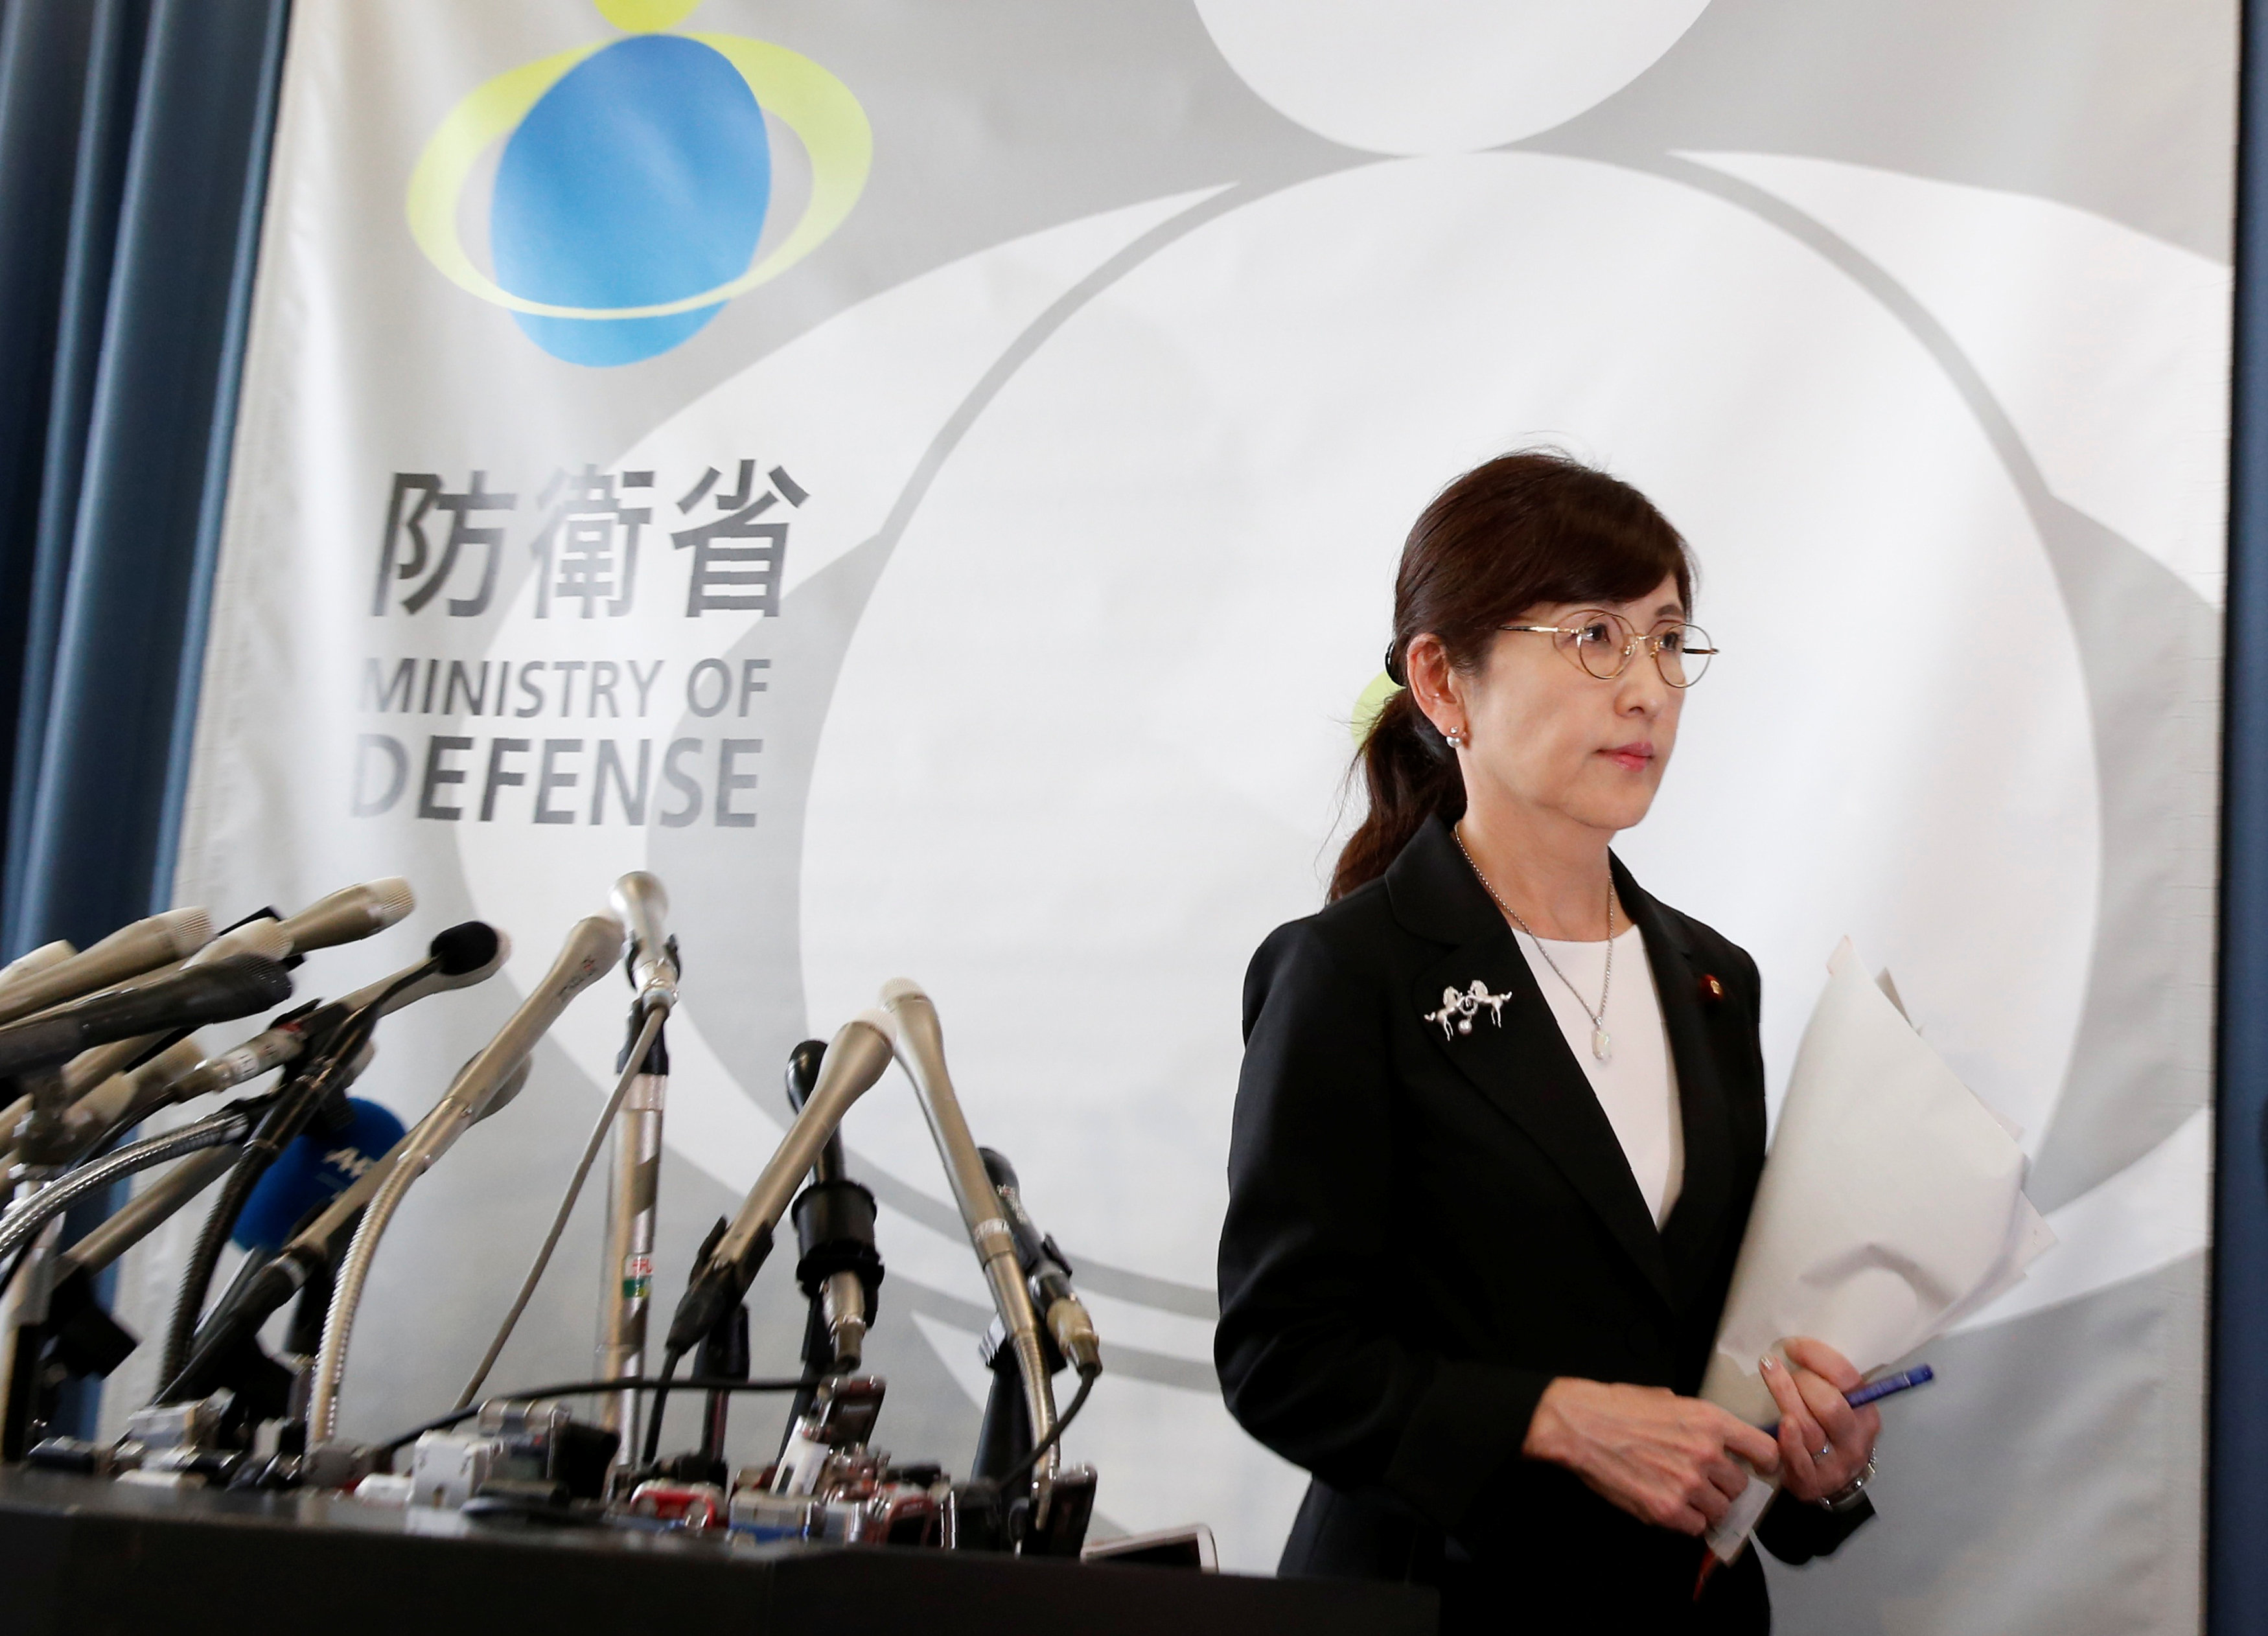 وزيرة الدفاع اليابانية تومومى إينادا  عقب مغادرة المؤتمر واعلان الاستقالة